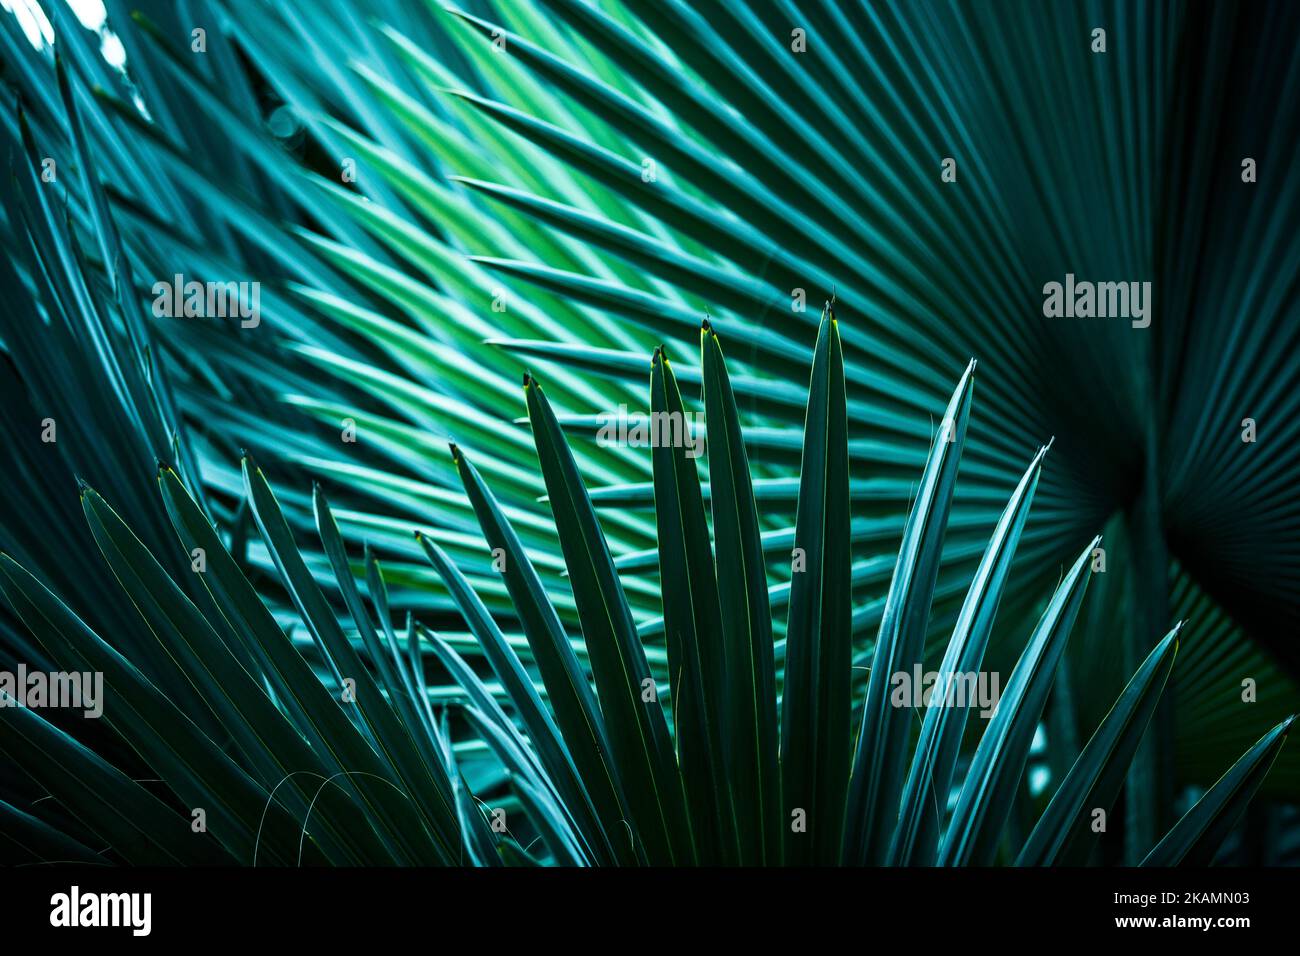 Dettagli delle foglie di palma in diverse sfumature e colori Foto Stock